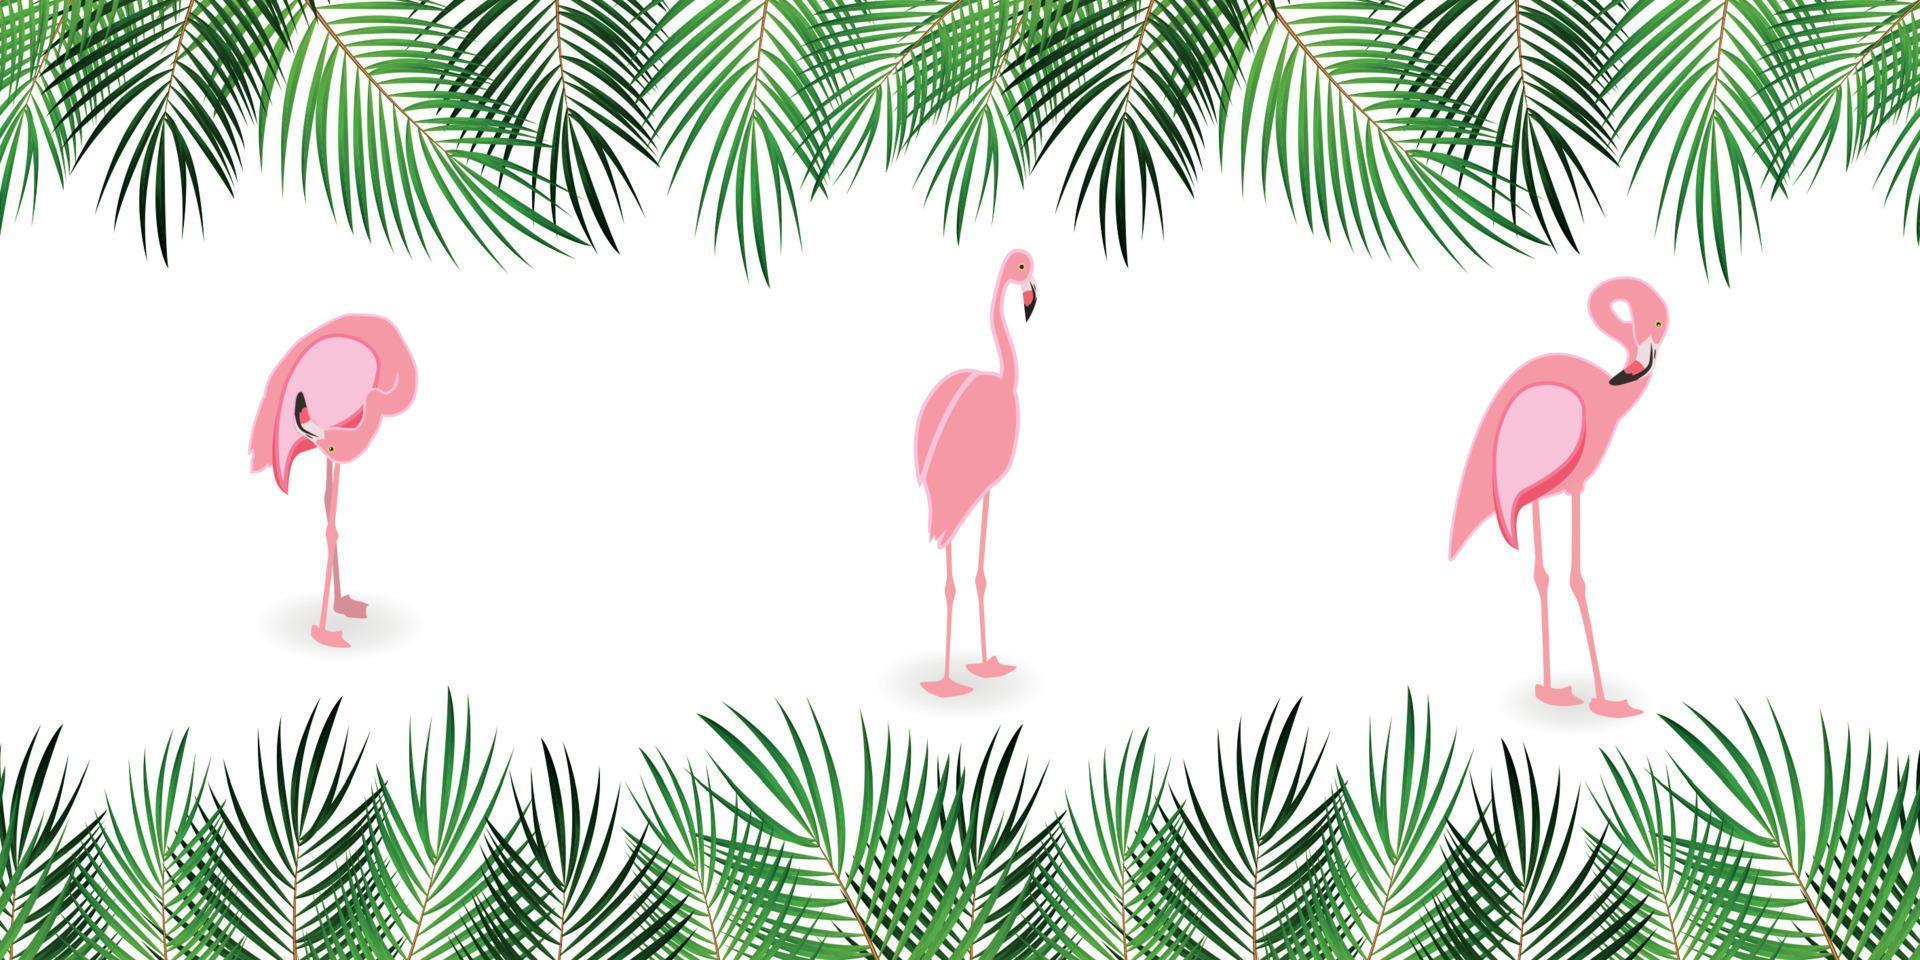 cadre de feuille de palmier avec fond blanc. illustration vectorielle. vecteur